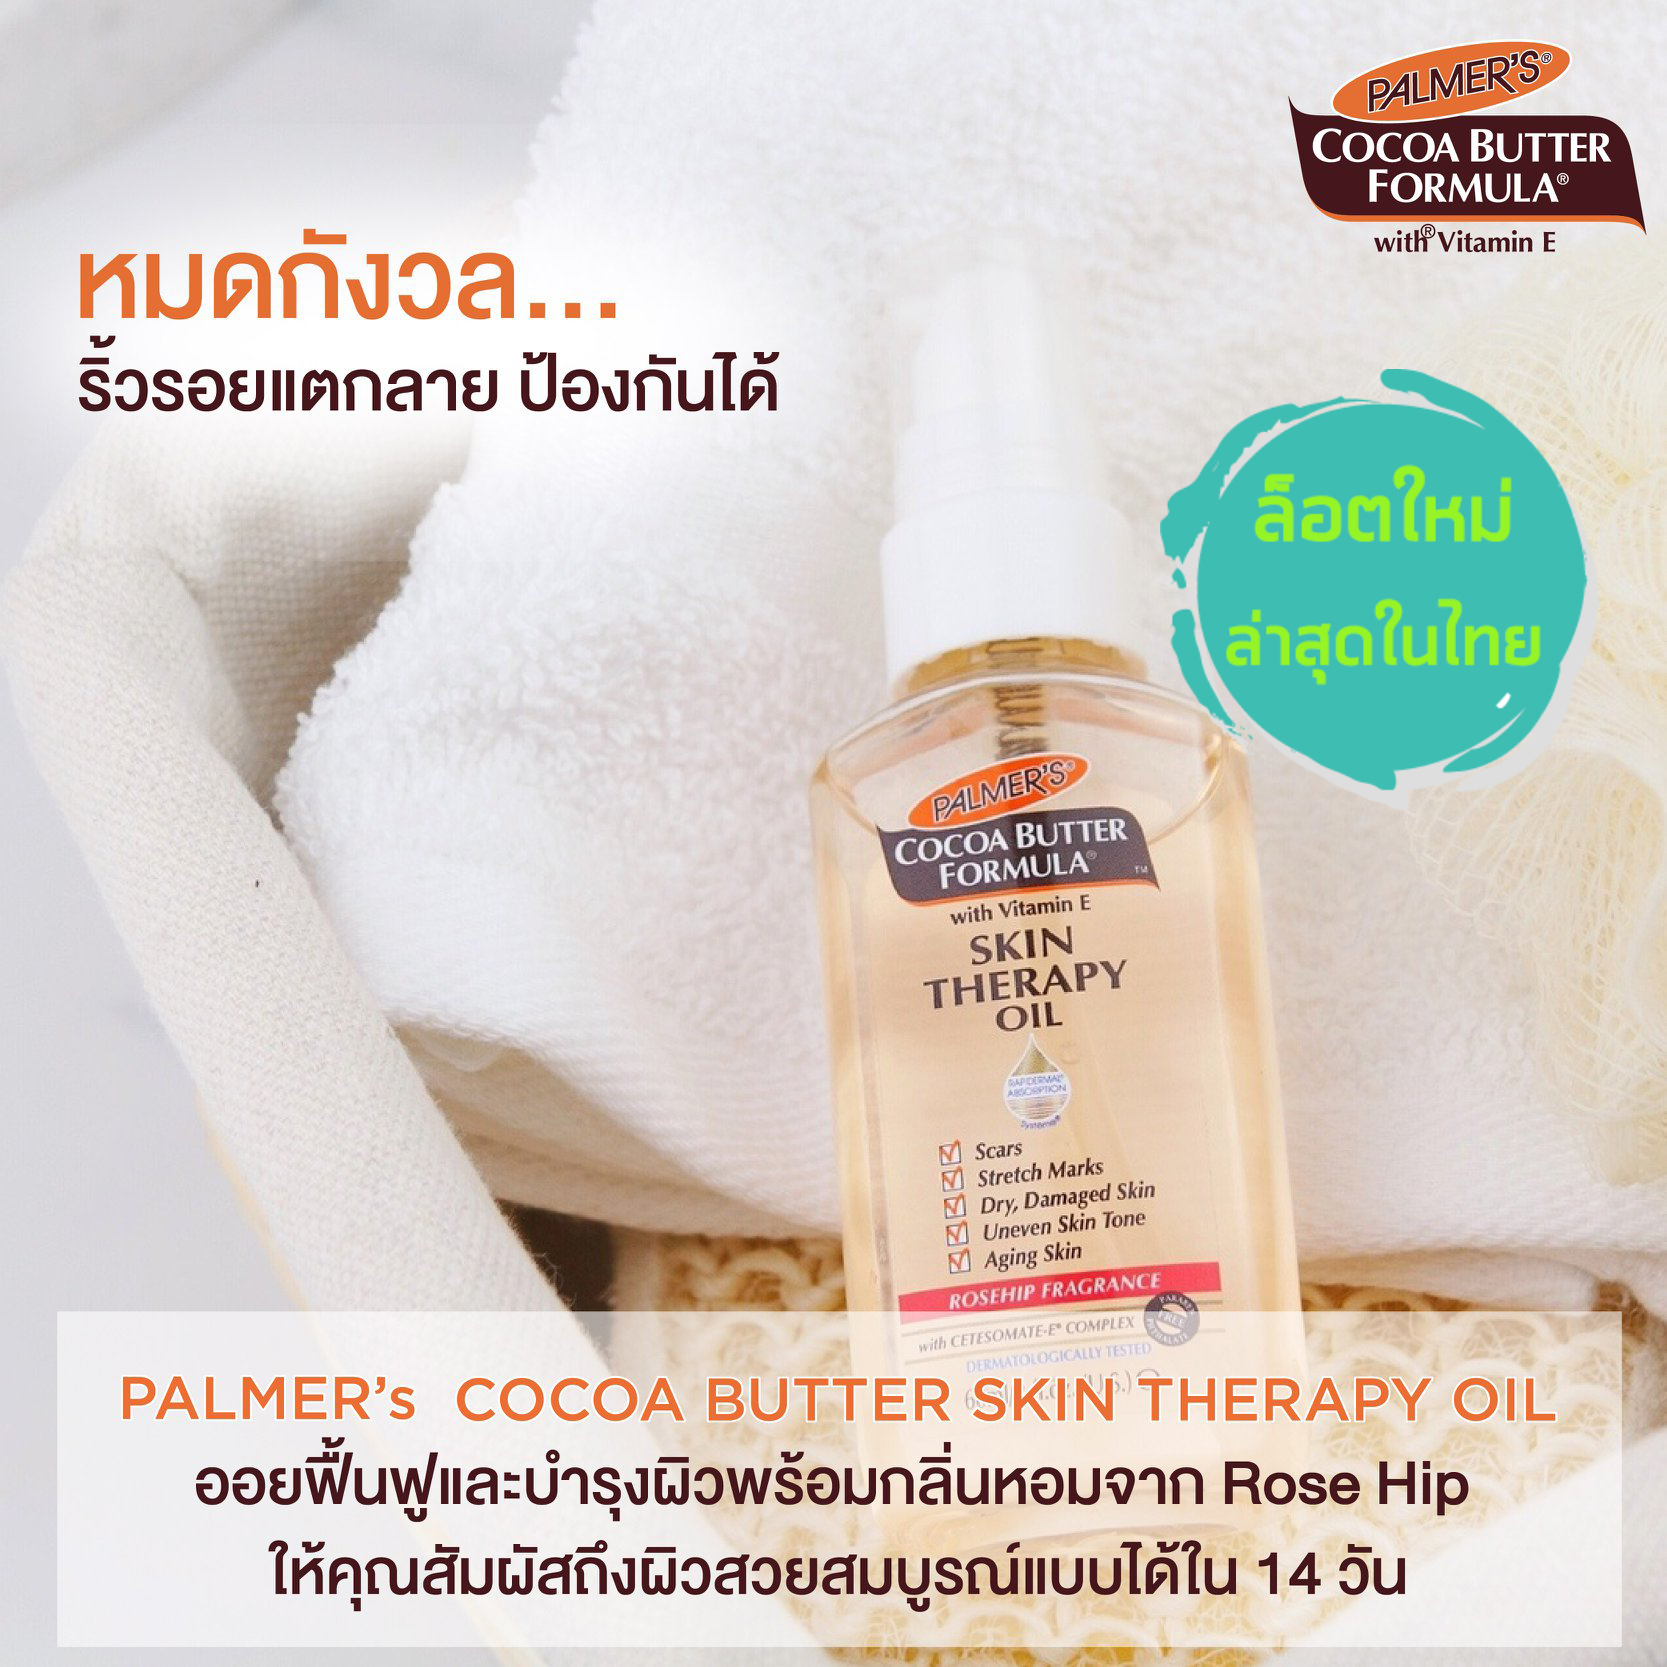 Palmer 's Cocoa Butter Formula Skin Therapy Oil 60ml ปาล์มเมอร์ น้ำมันชมพูดูแลผิว สำหรับรอยแตกลาย ช่วยรอยแตกลายที่เกิดขึ้นแล้วให้แลดูจางลง ปลอดภัยต่อลูกน้อยในครรภ์